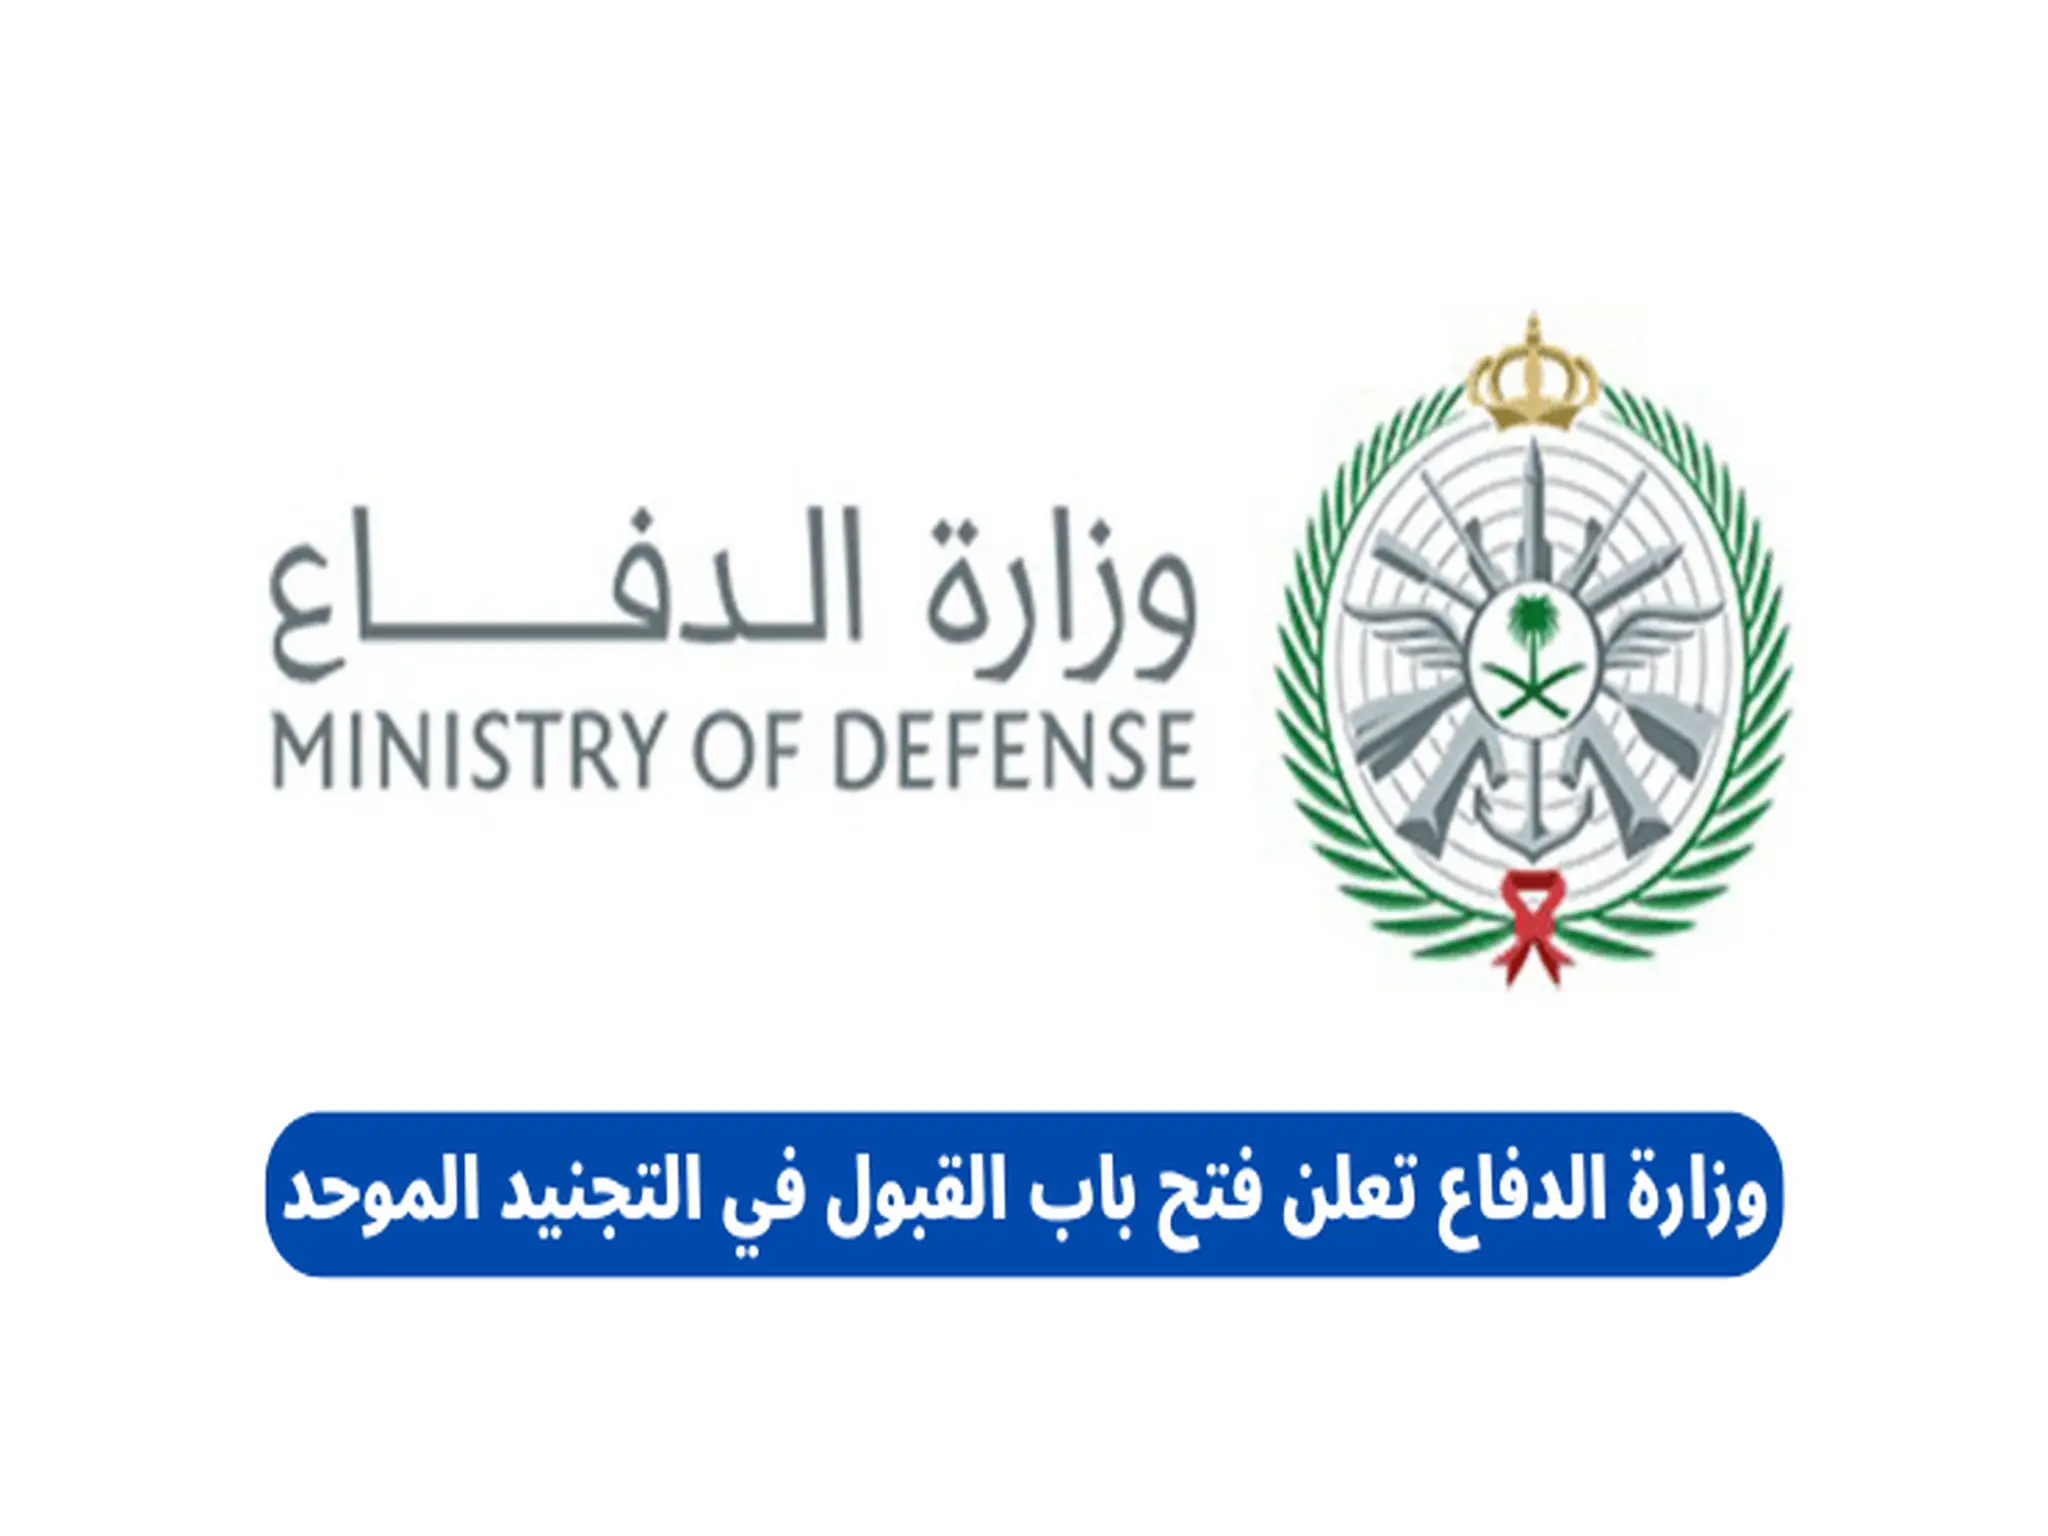 وزارة الدفاع تعلن فتح التجنيد الموحد بالقوات المسلحة 1444